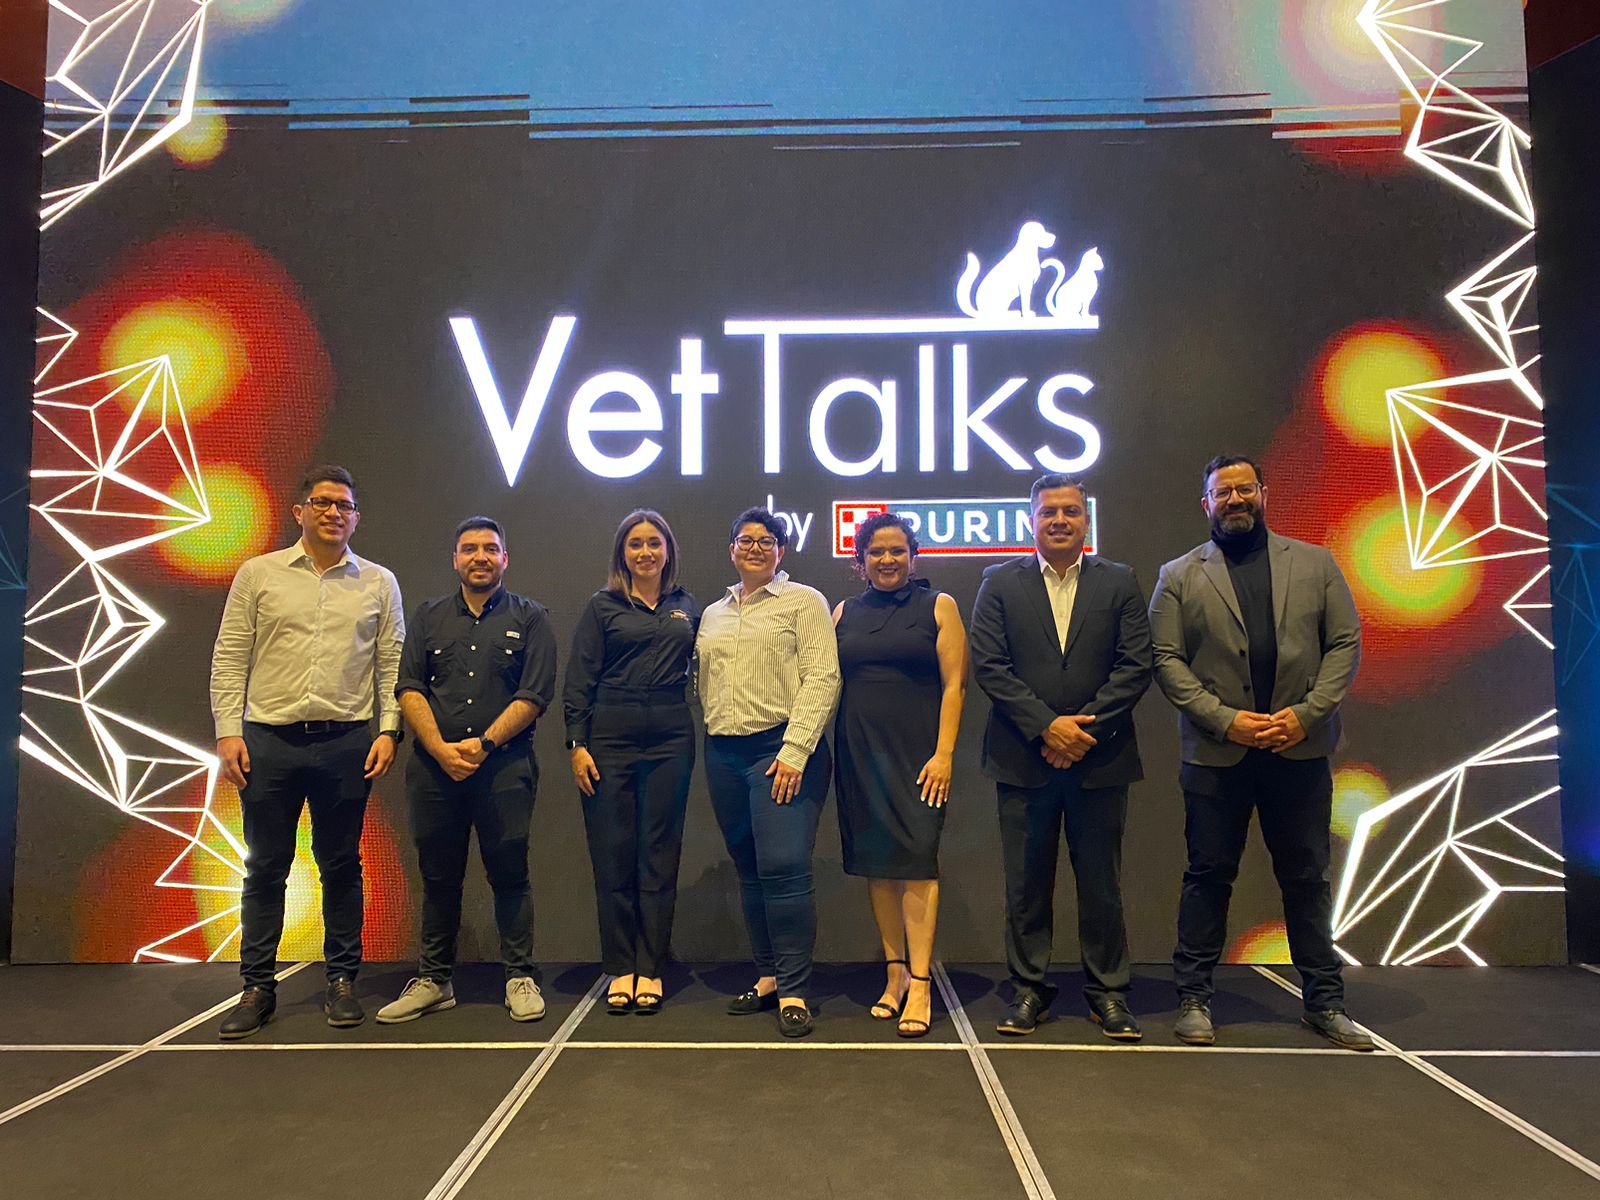 PRO PLAN de Nestlé Purina realiza el primer Vet Talk enGuatemala para impulsar la formación continua de los médicos veterinarios